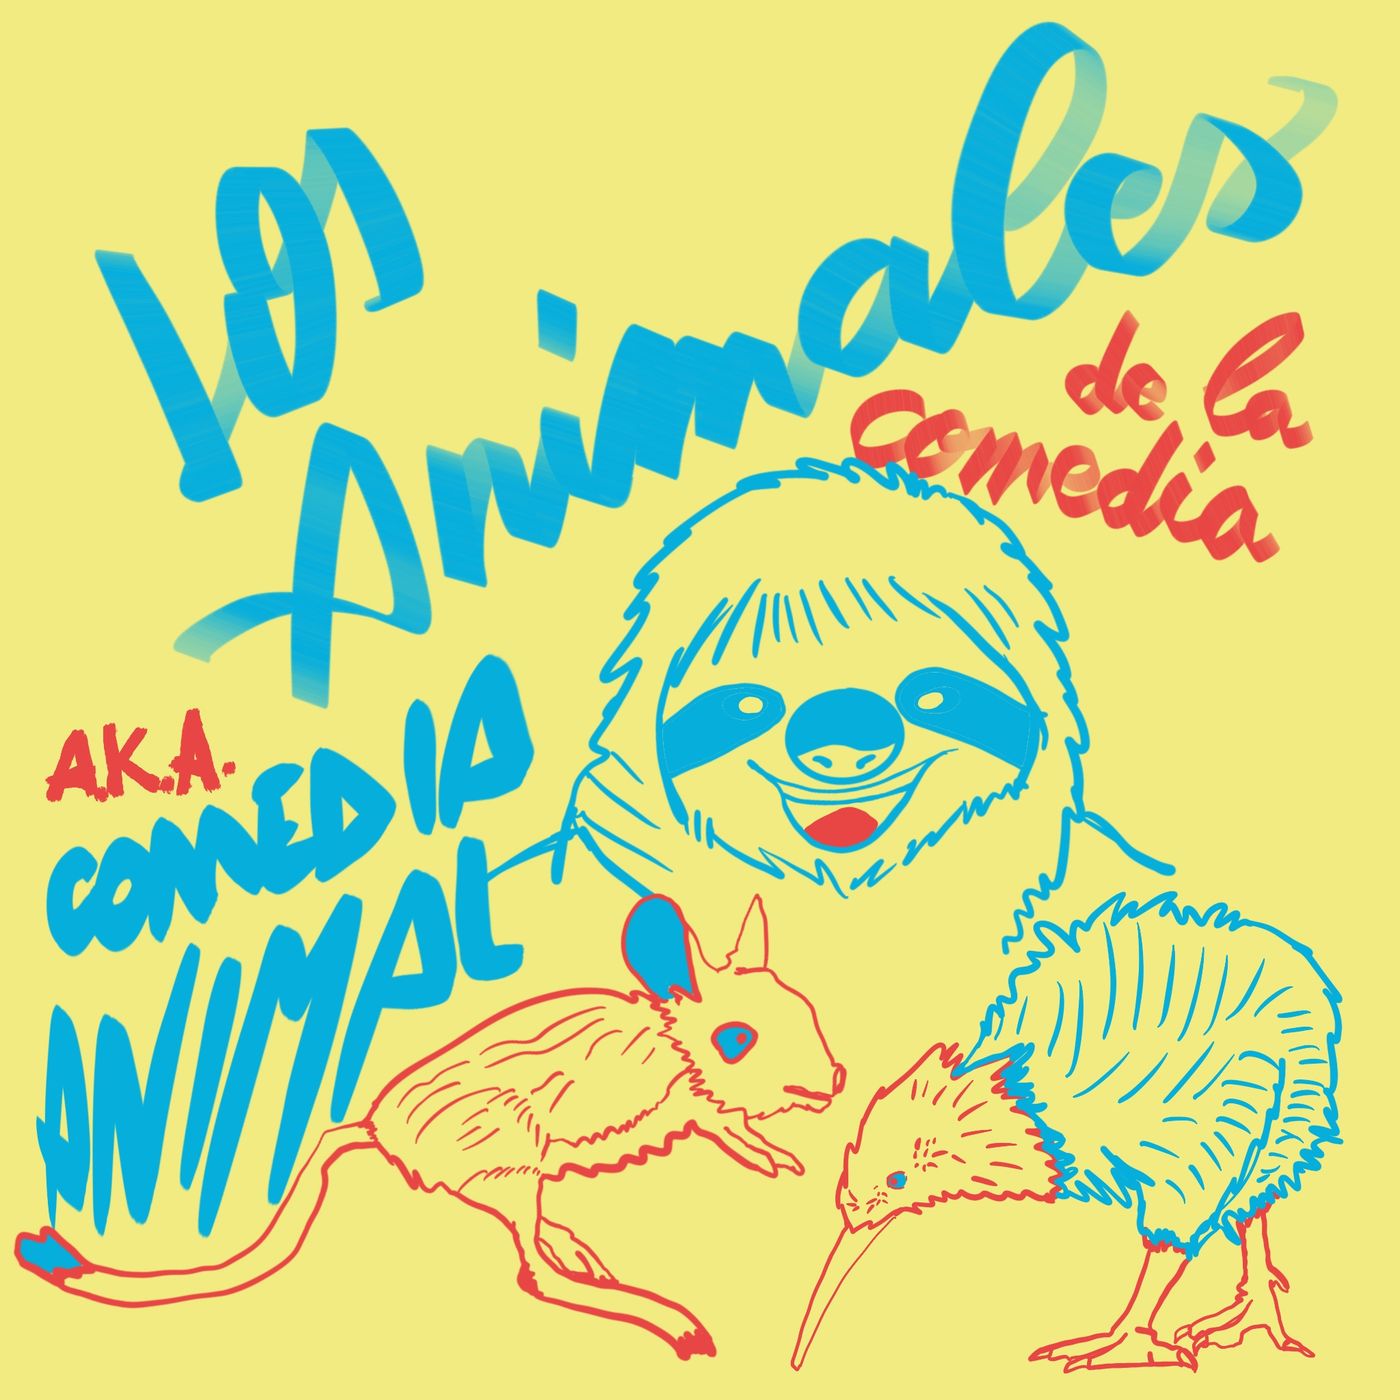 Los Animales del Humor a.k.a. Comedia Animal